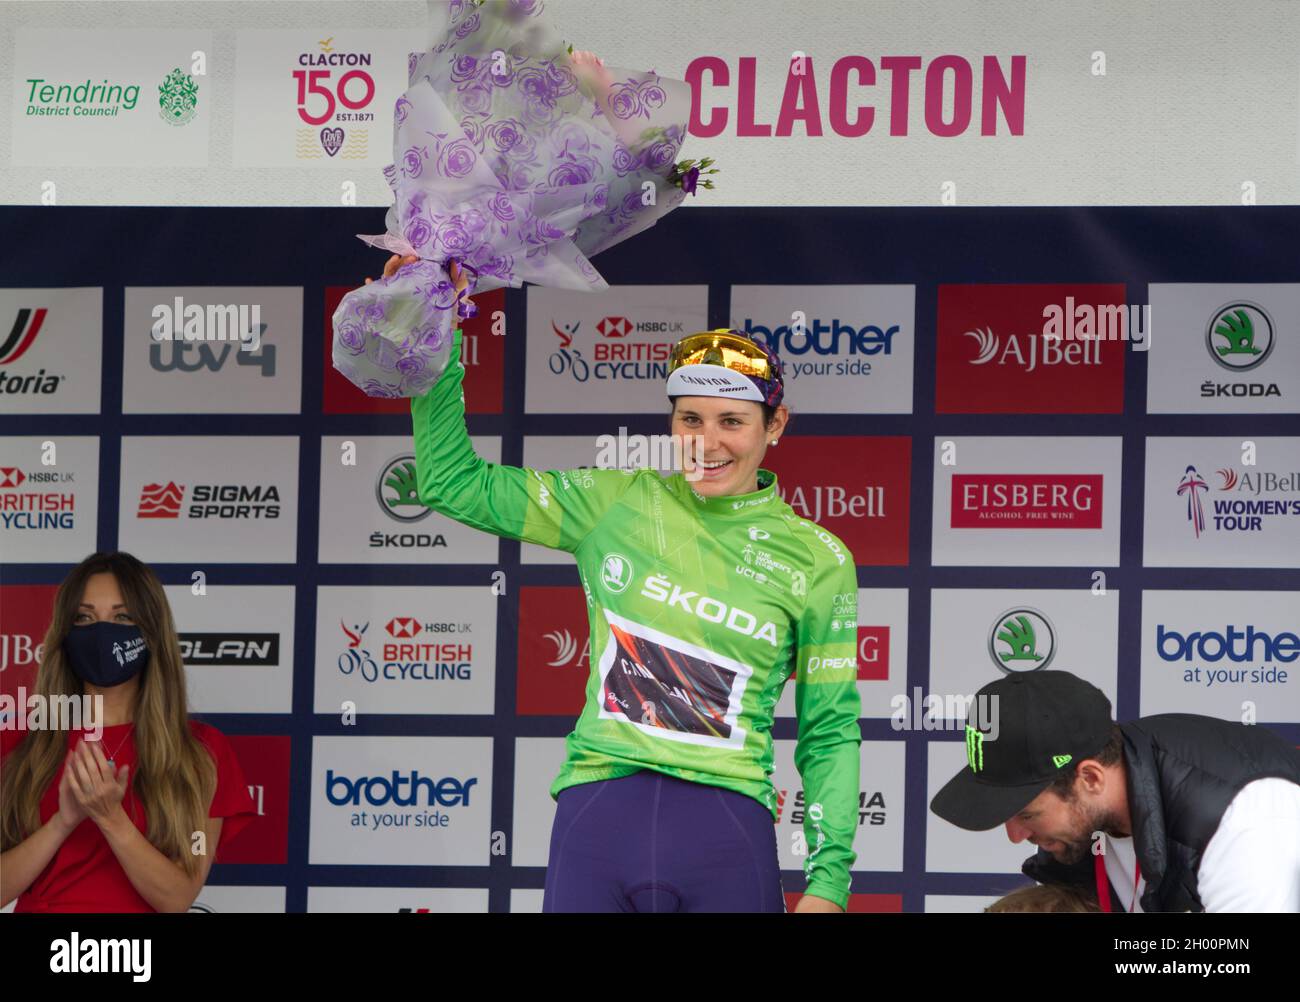 AJ Bell tournée cycliste féminine 2021 étape 5 Colchester à Clacton.Elise Chabbey dirige la classification des montagnes et discute avec Mark Cavendish Banque D'Images